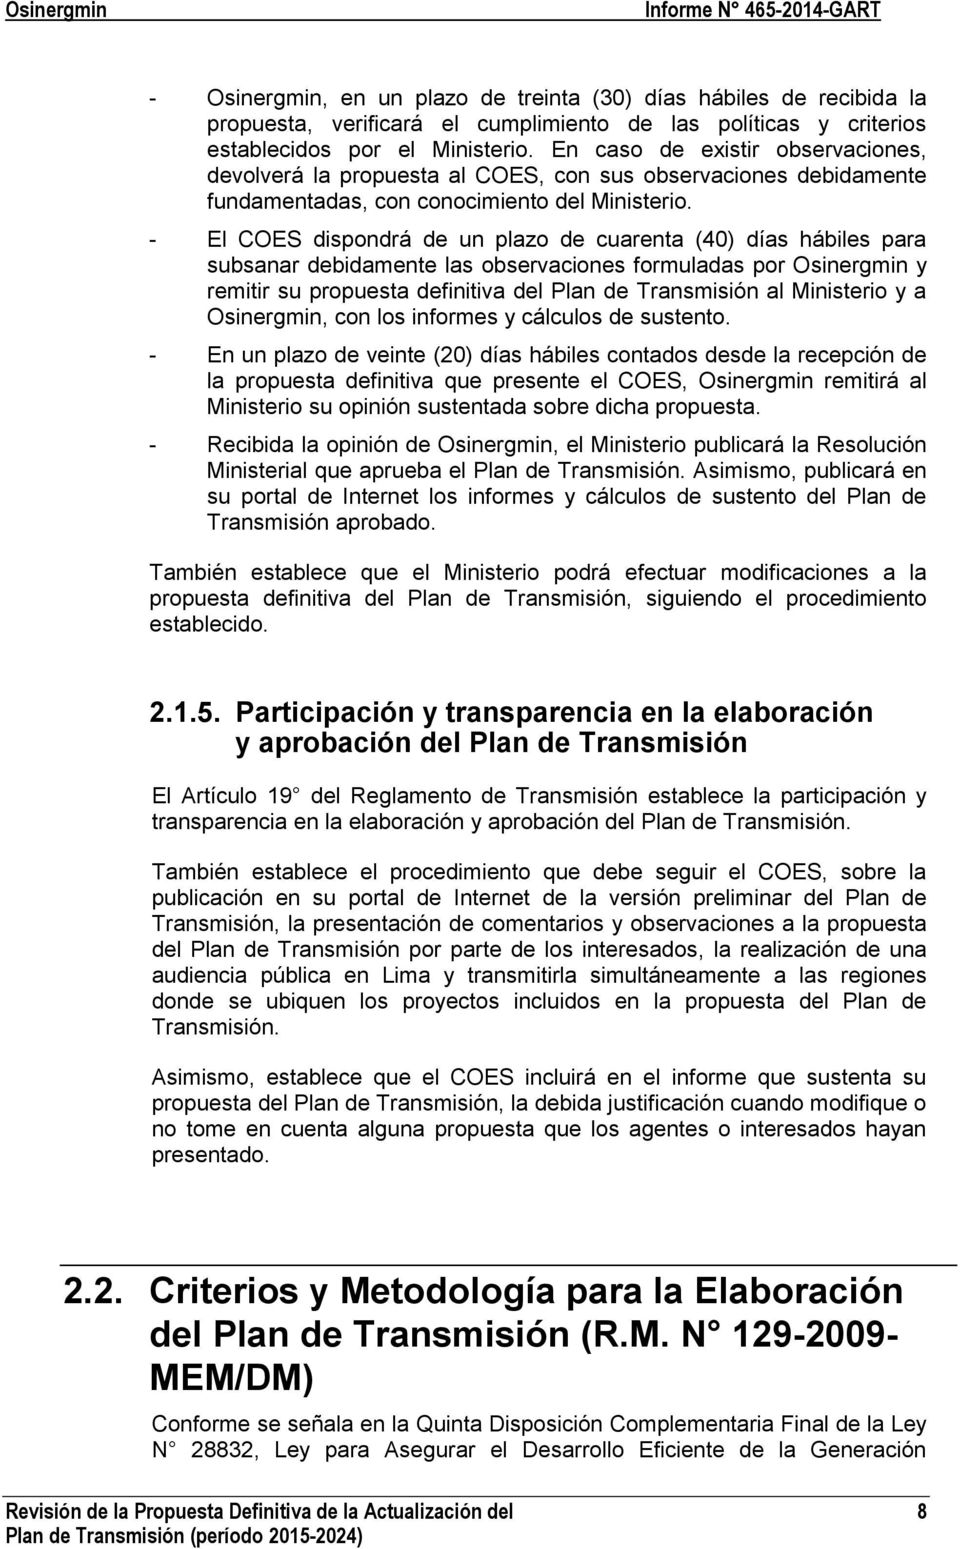 - El COES dispondrá de un plazo de cuarenta (40) días hábiles para subsanar debidamente las observaciones formuladas por Osinergmin y remitir su propuesta definitiva del Plan de Transmisión al